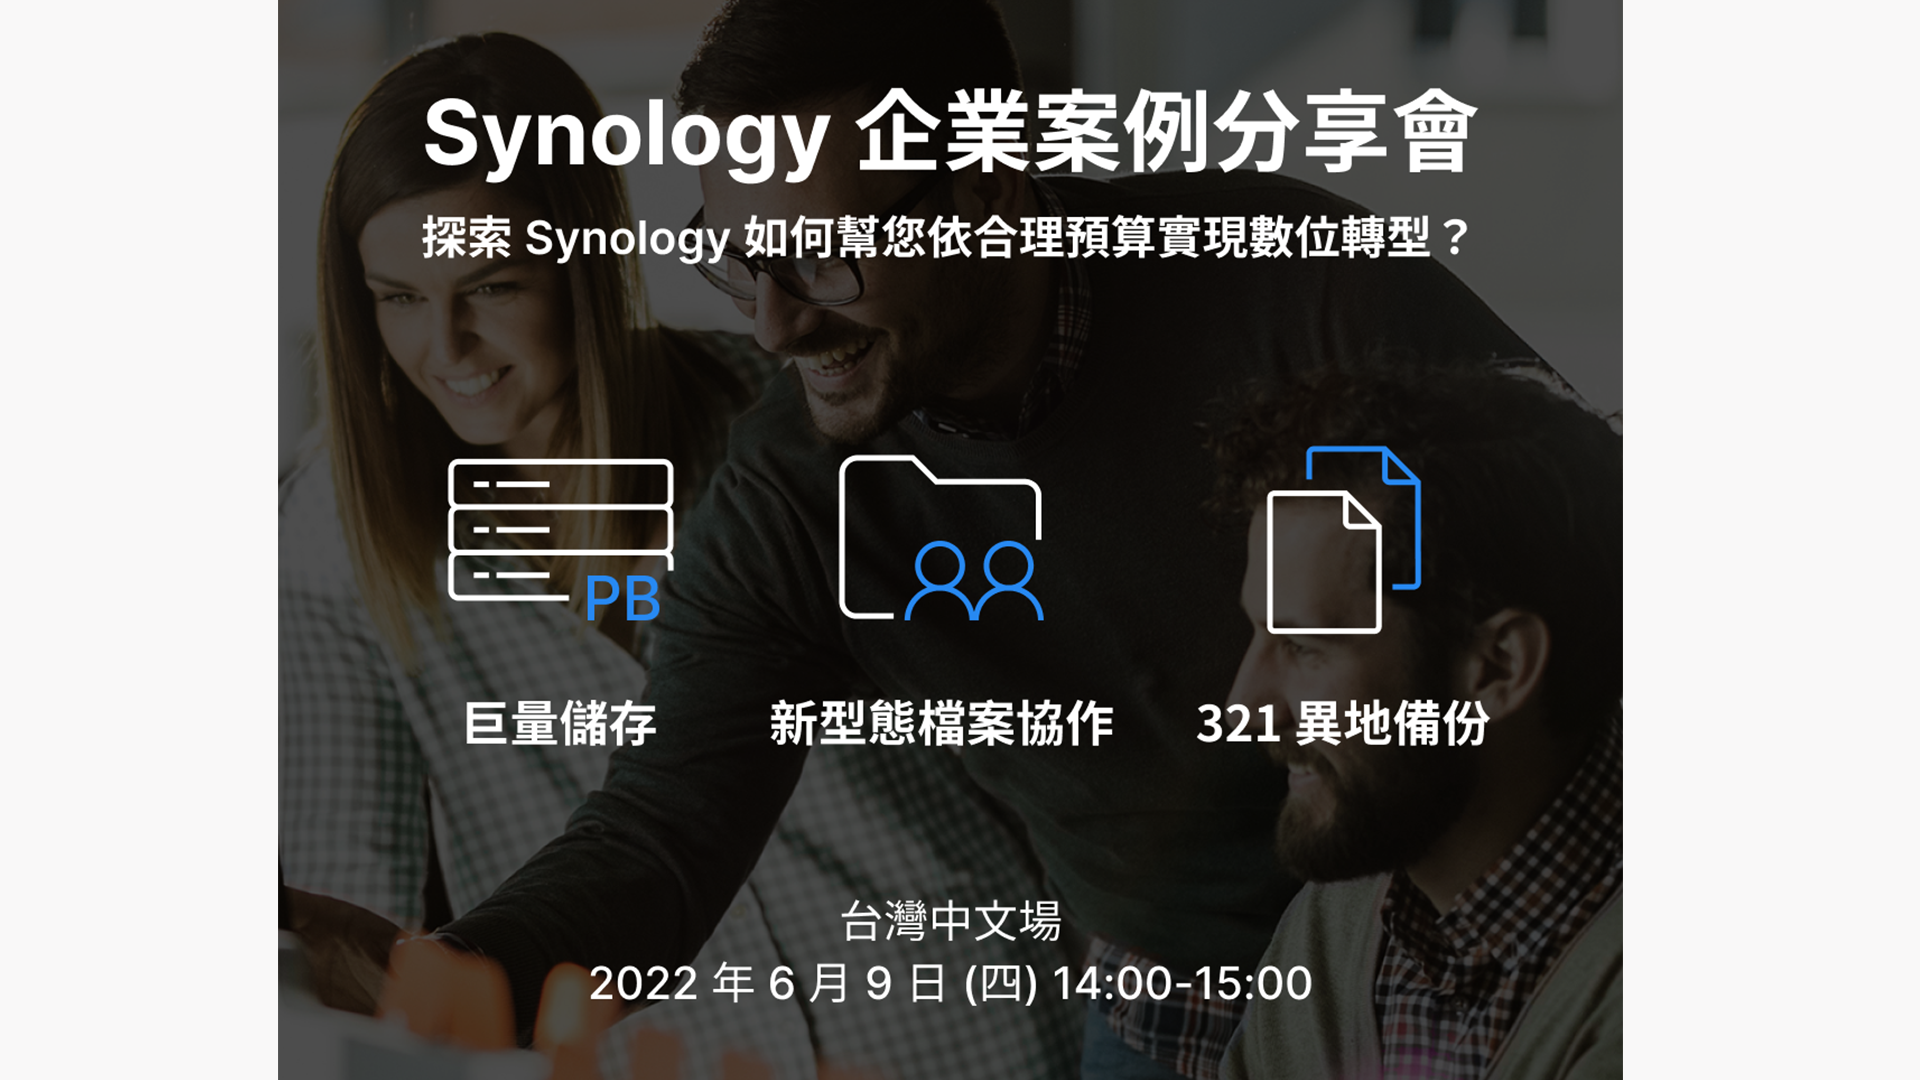 【活動分享】Synology 企業案例分享會-深入分析各產業儲存、檔案協作、備份應用